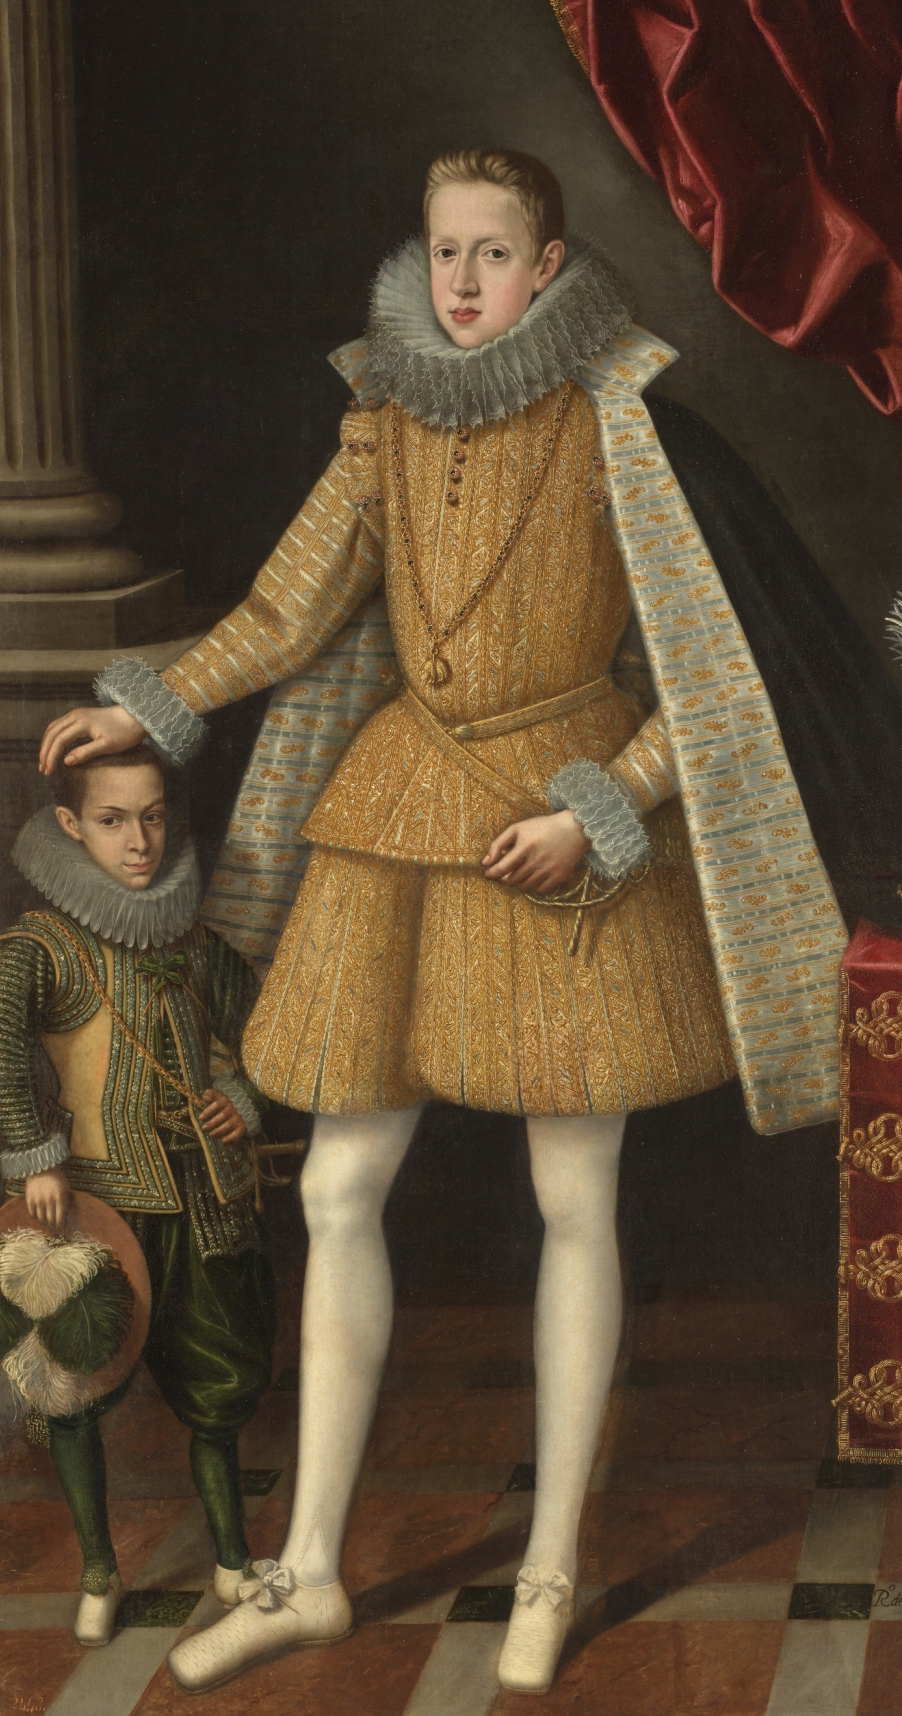 Pocas personas tuvieron el privilegio del que gozó Miguel Soplillo al ser retratado junto al rey.